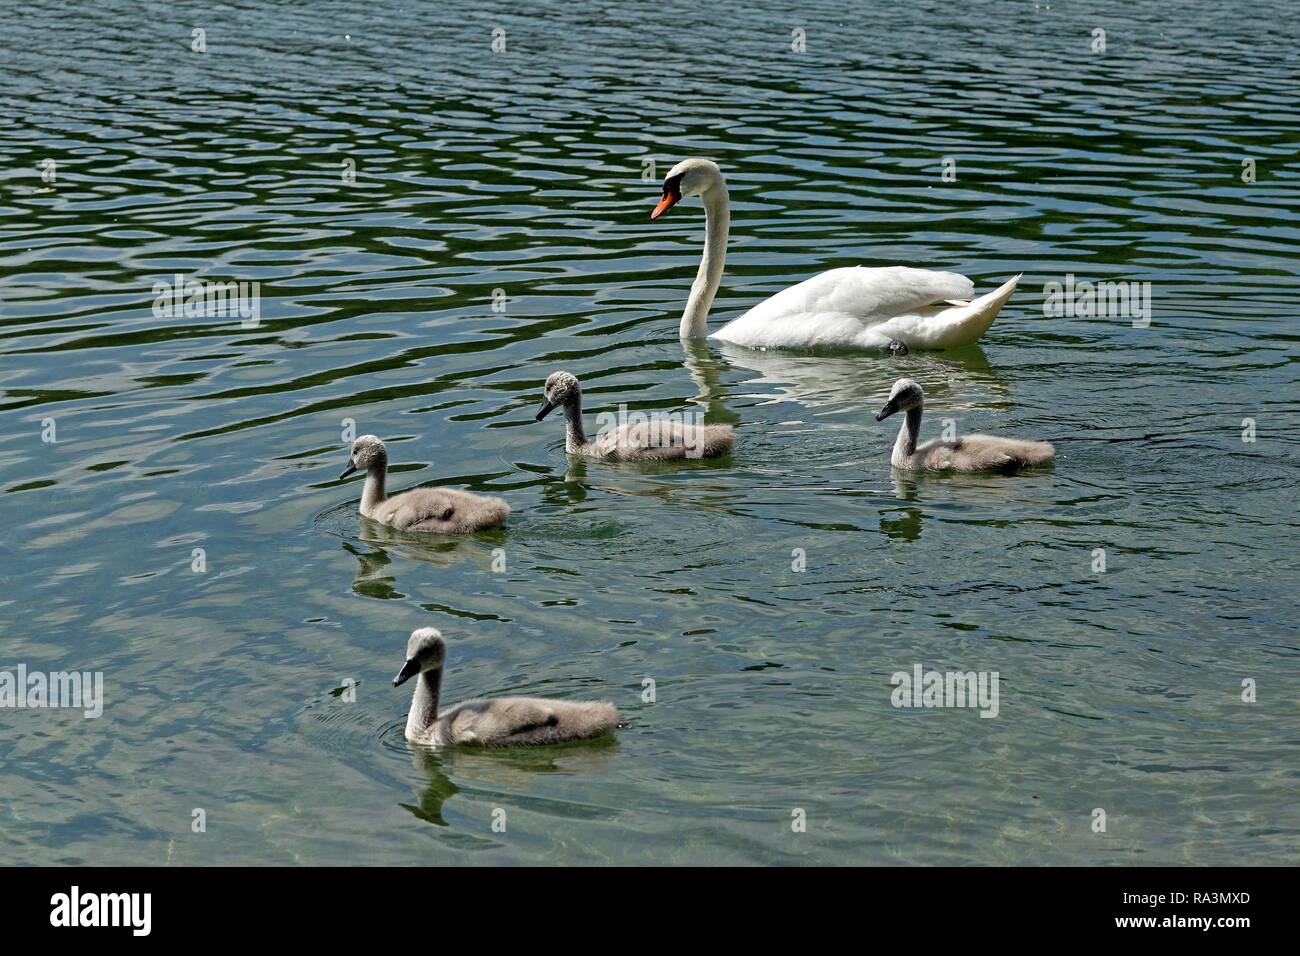 Le Cygne tuberculé (Cygnus olor) avec les poussins dans l'eau, la famille swan, lac Alpsee, Hohenschwangau, Allgäu, Bavière, Allemagne Banque D'Images